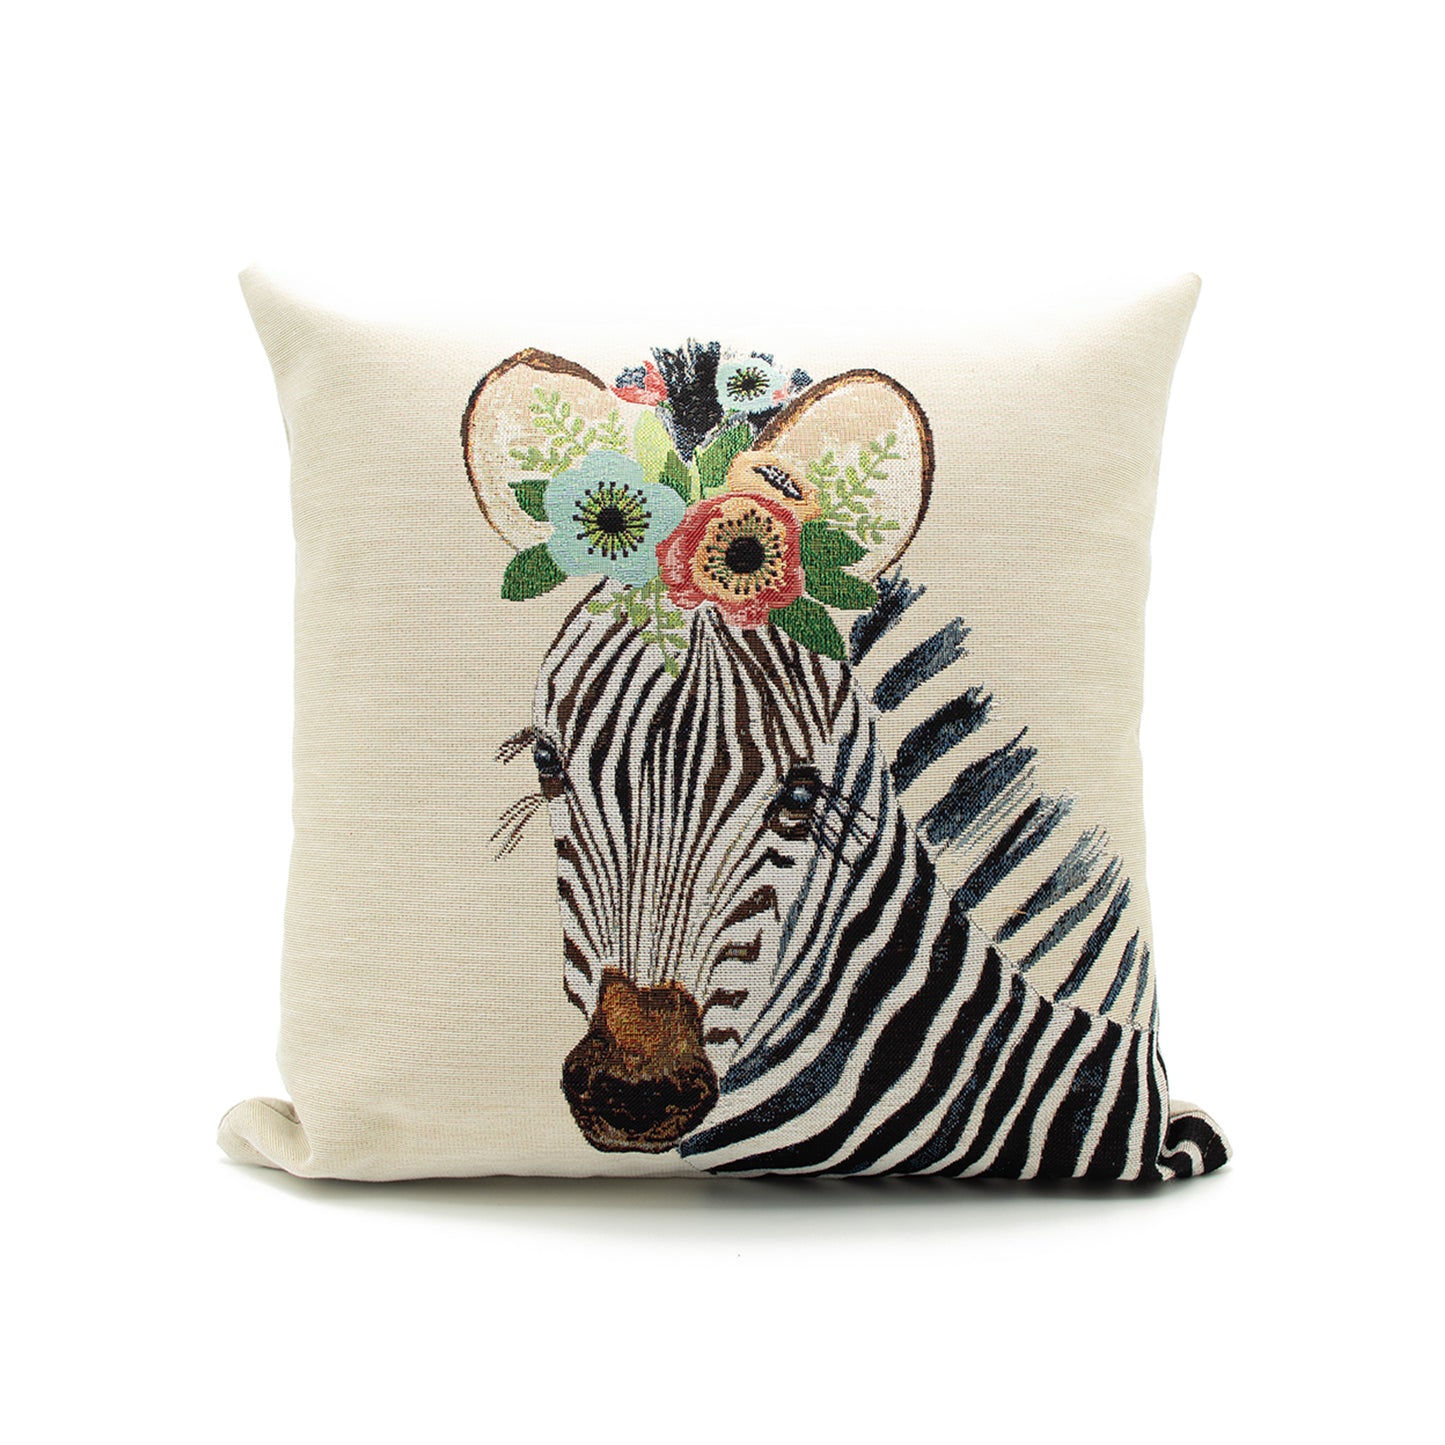  Zebra Animal print cushion 